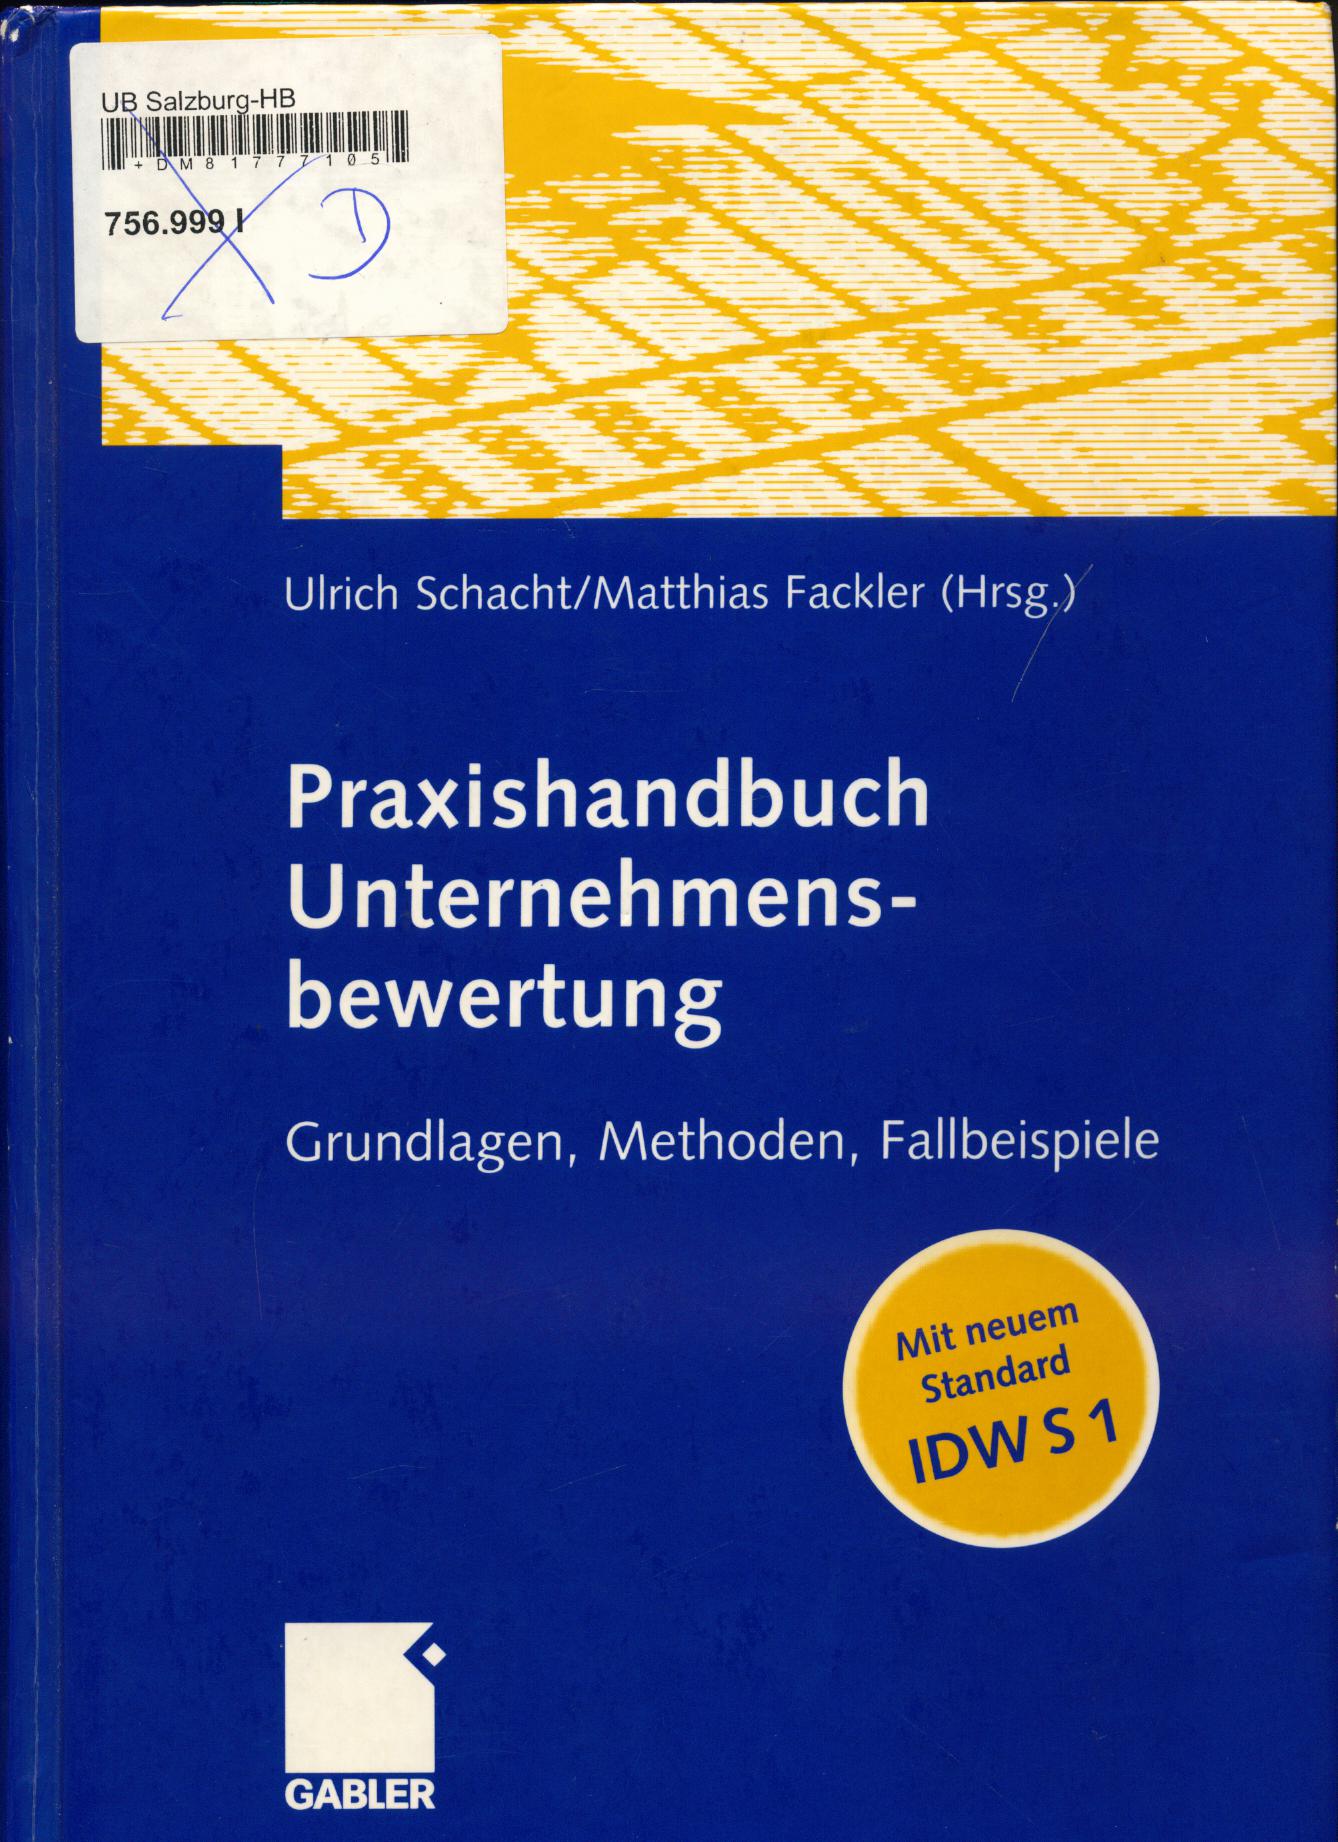 Praxishandbuch Unternehmensbewertung Grundlagen, Methoden, Fallbeispiele 1. Auflage - Schacht, Ulrich und Matthias Fackler